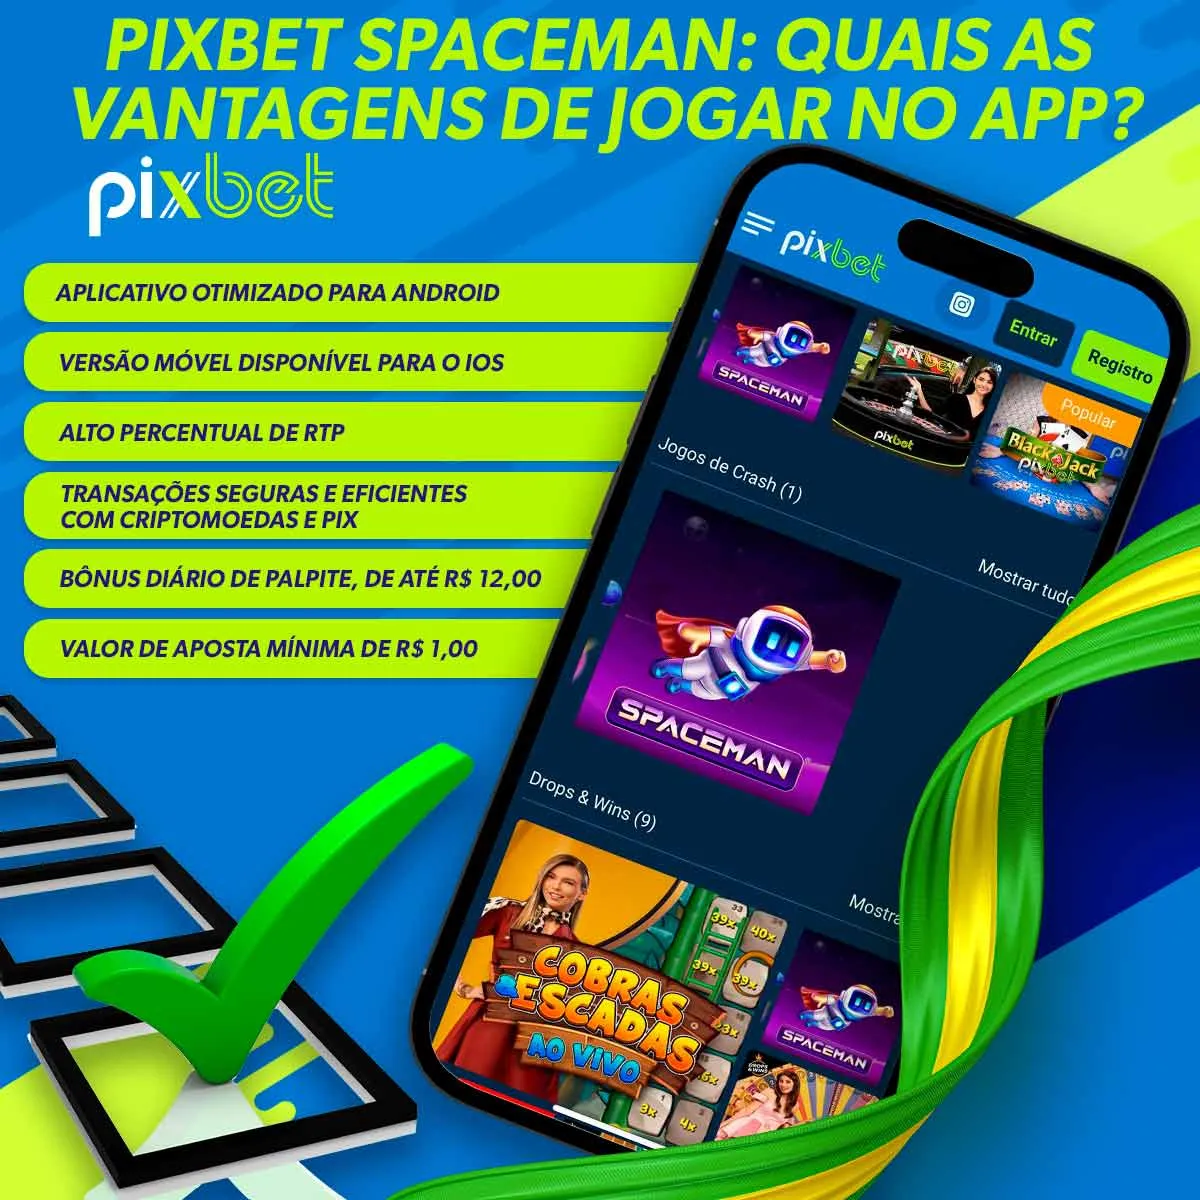 Quais são os benefícios de jogar Spaceman da Pixbet?